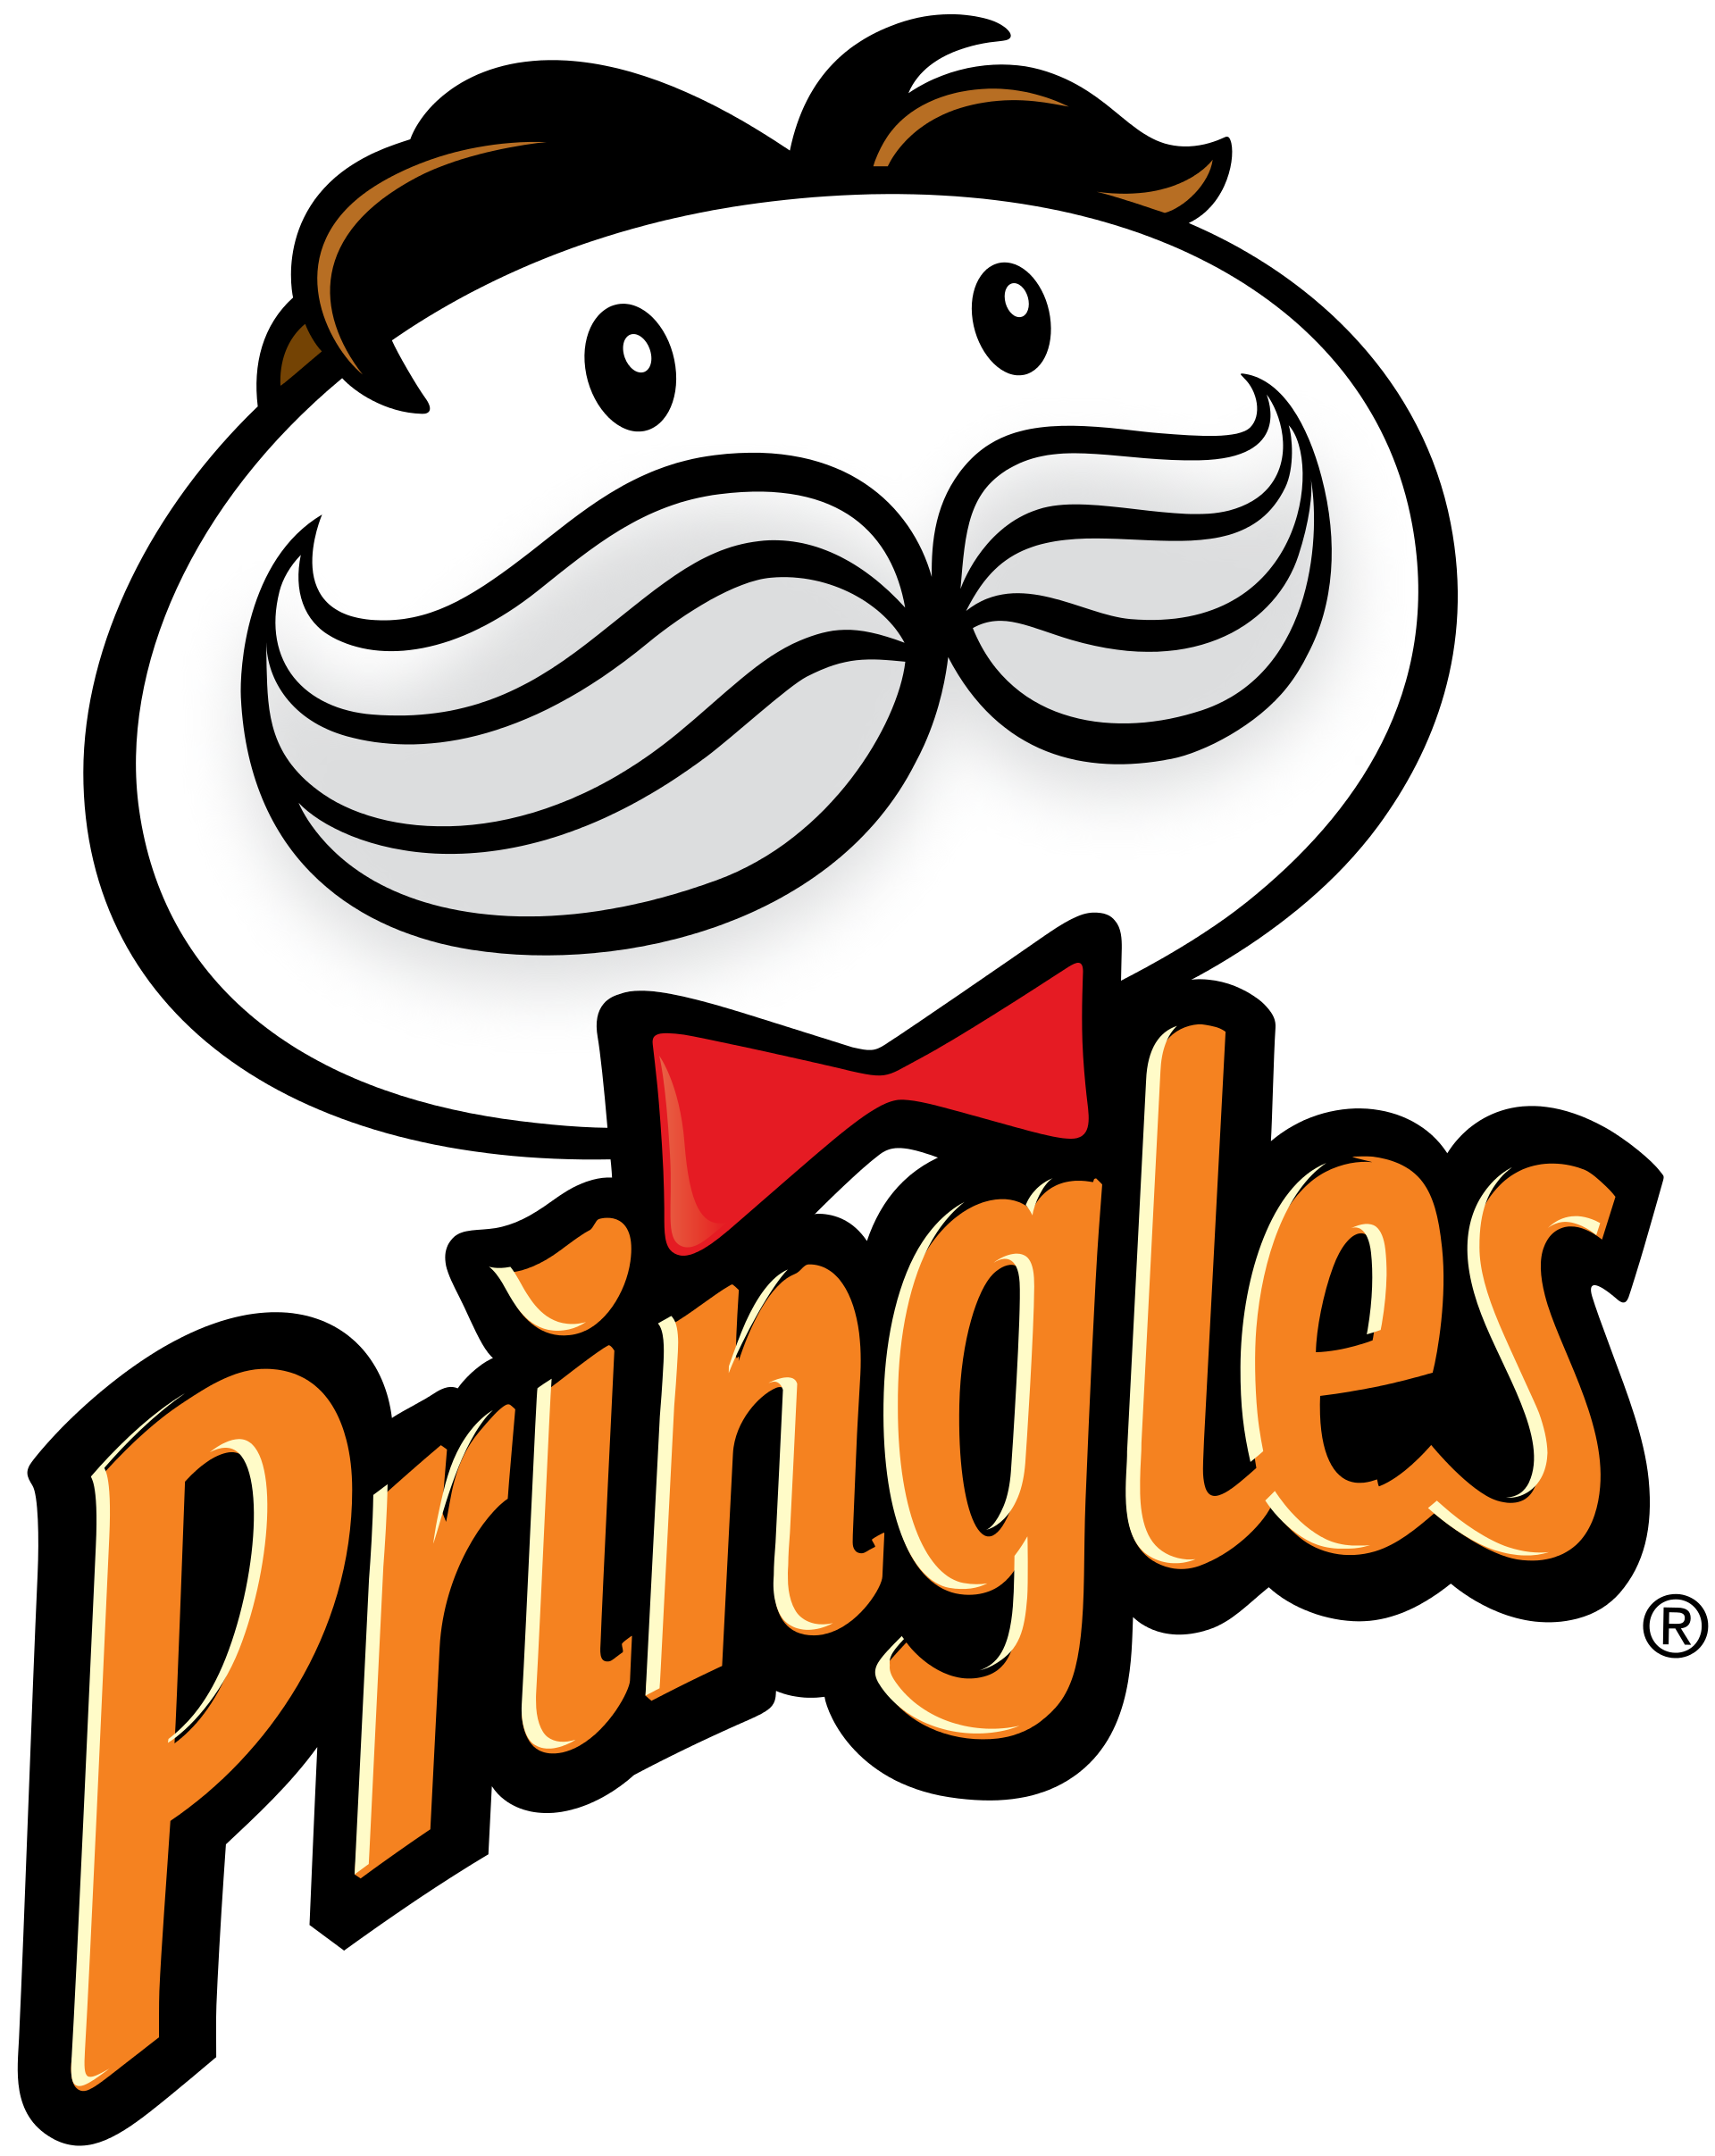 0 Result Images of Pringles Logo Transparent Background - PNG Image ...